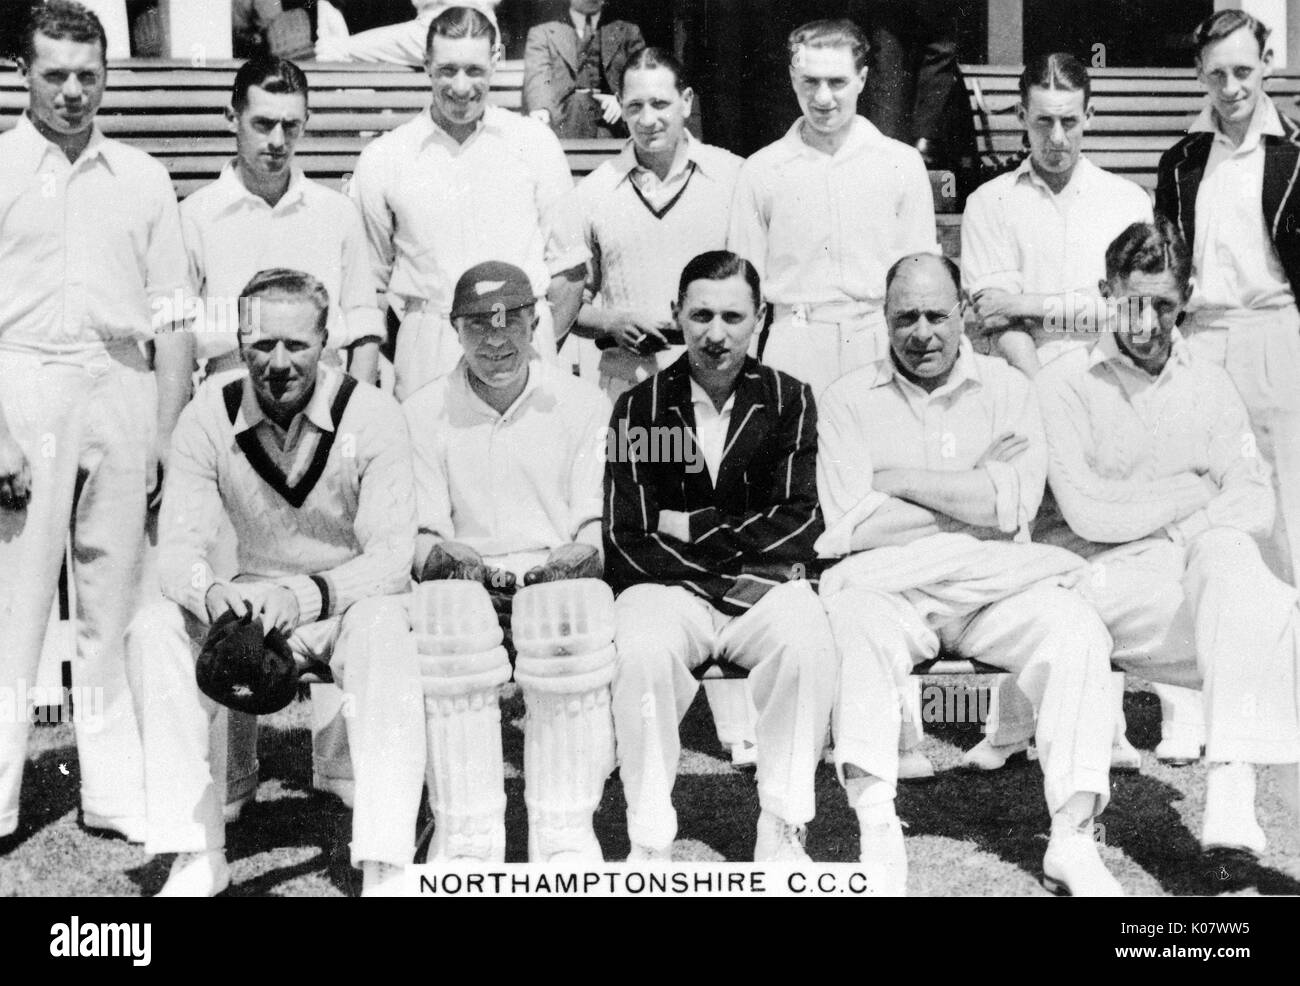 Foto de grupo del equipo de cricket de CCC, Northamptonshire. Fecha: circa 1936 Foto de stock